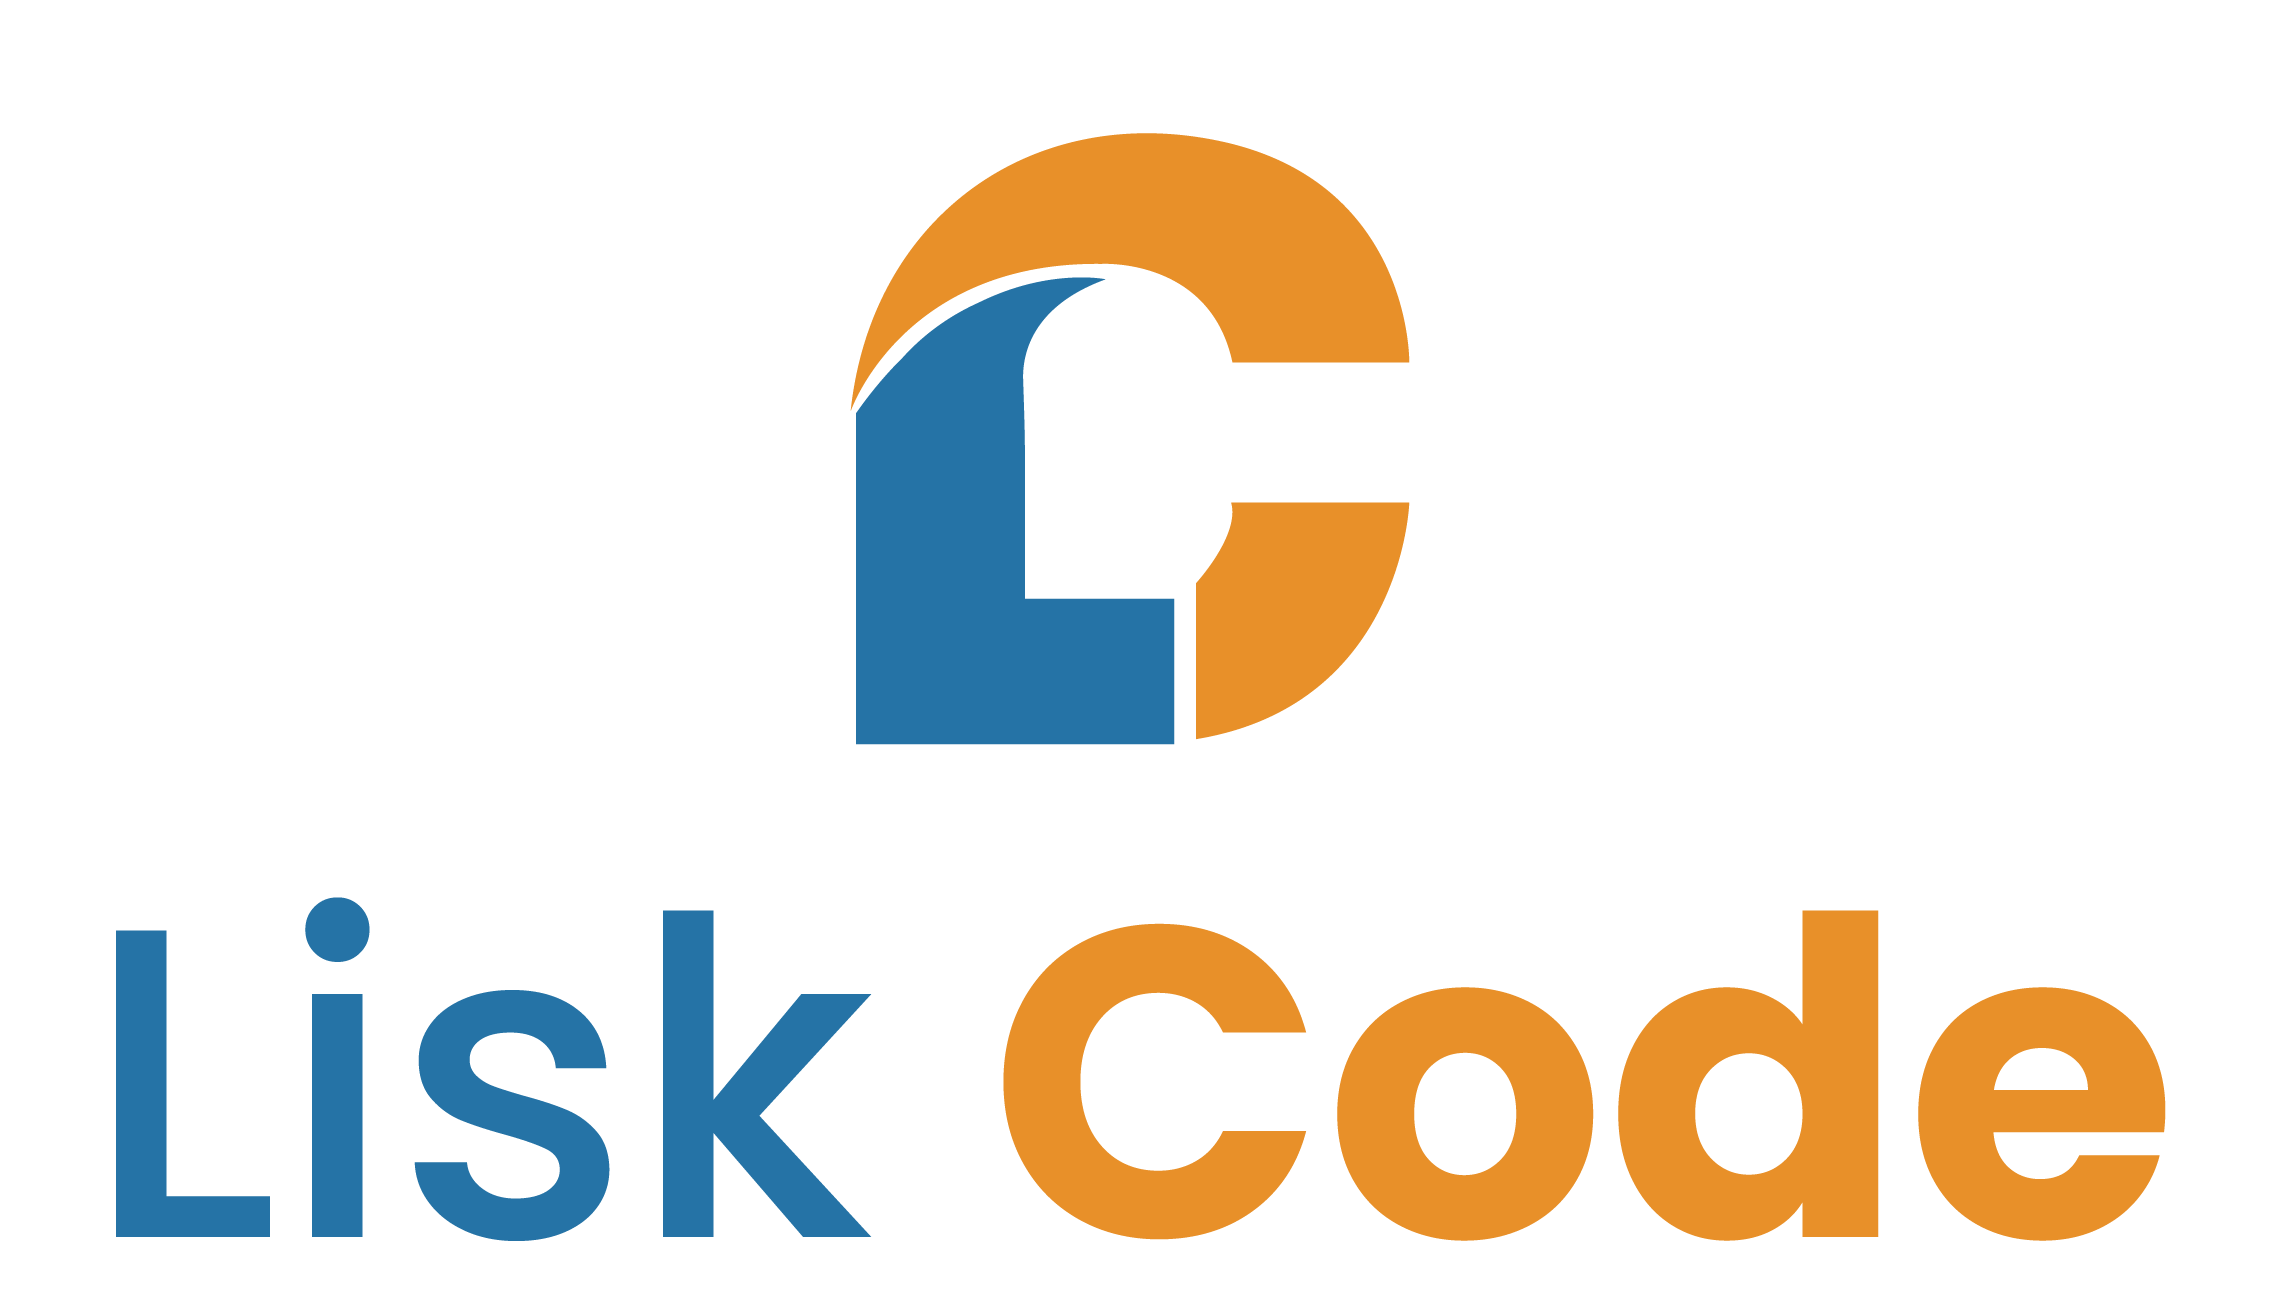 Lisk Code - El equipo Lisk Code